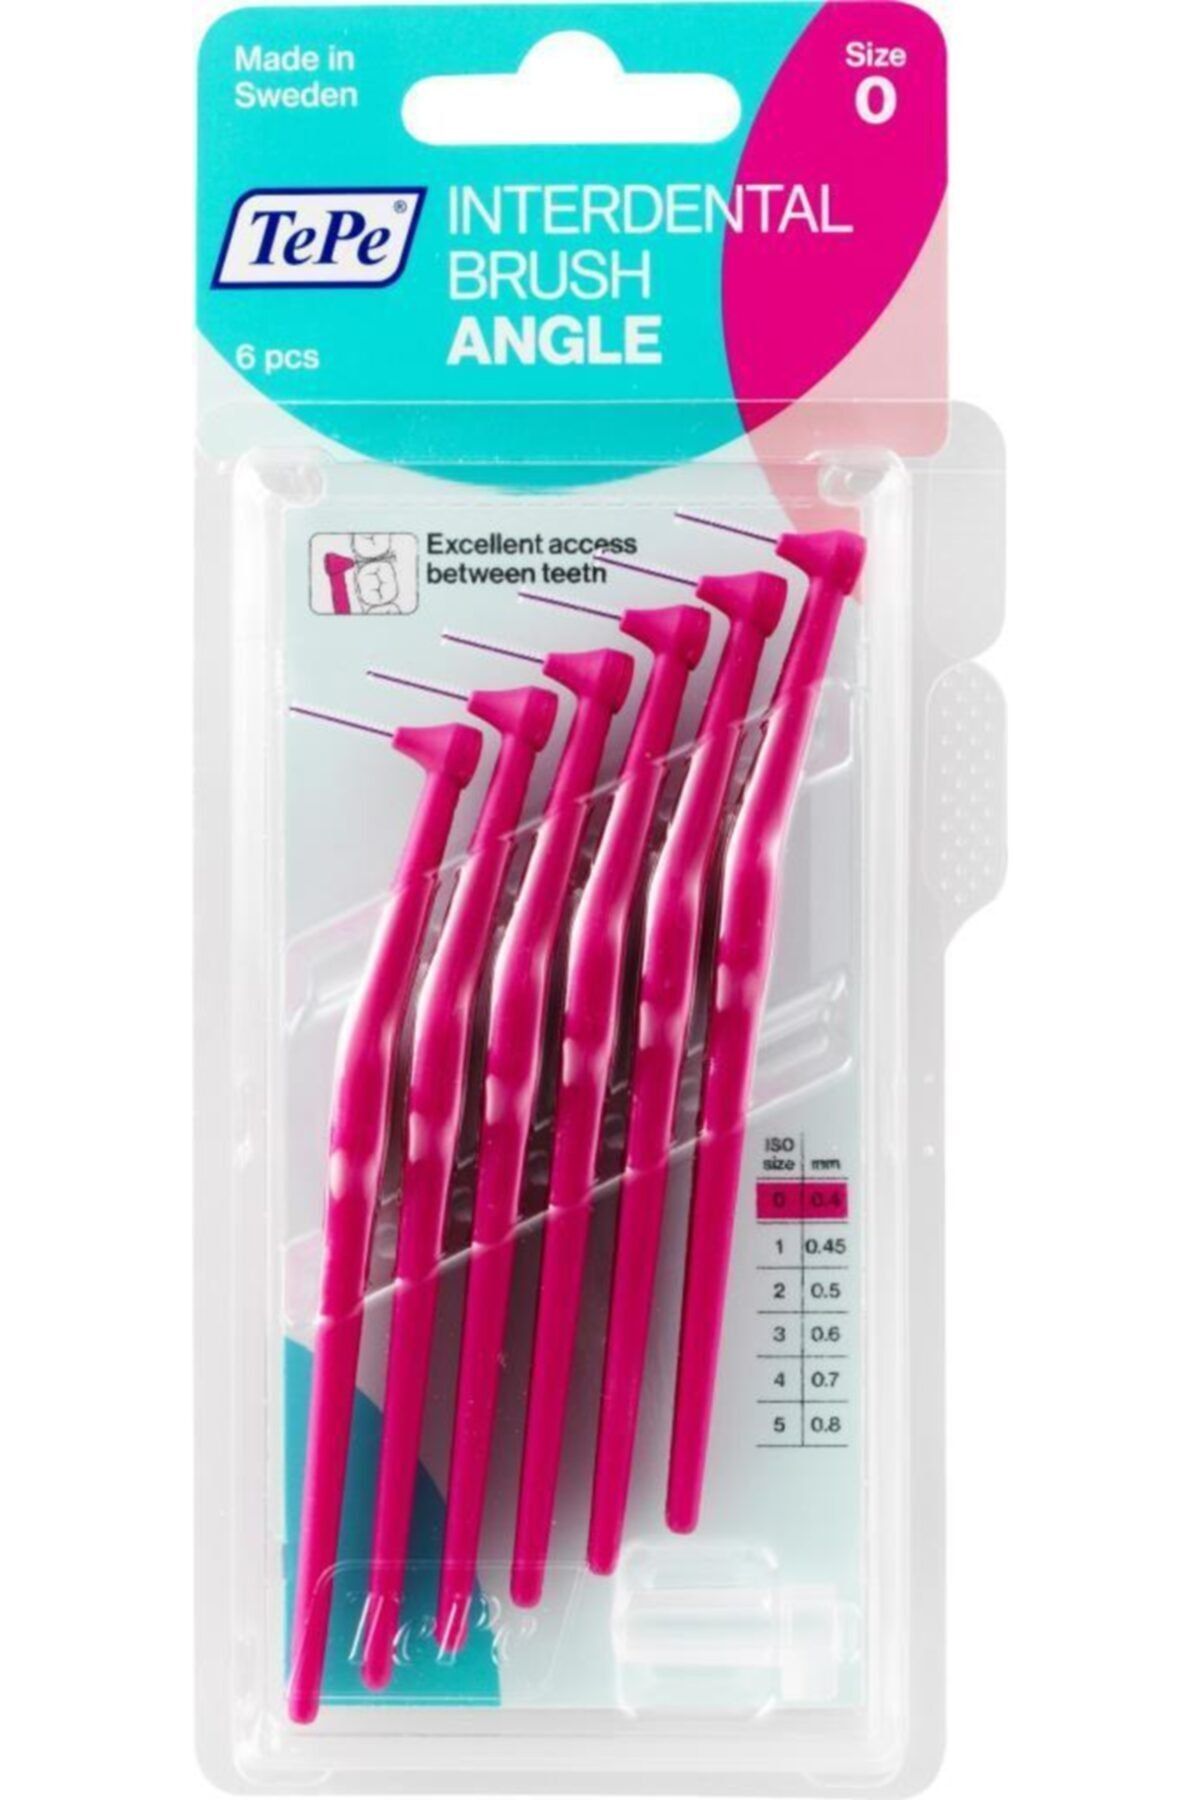 TePe Interdental Brush Angle Size 0 - 0.4mm - Pembe Renk Açılı Arayüz Fırçası